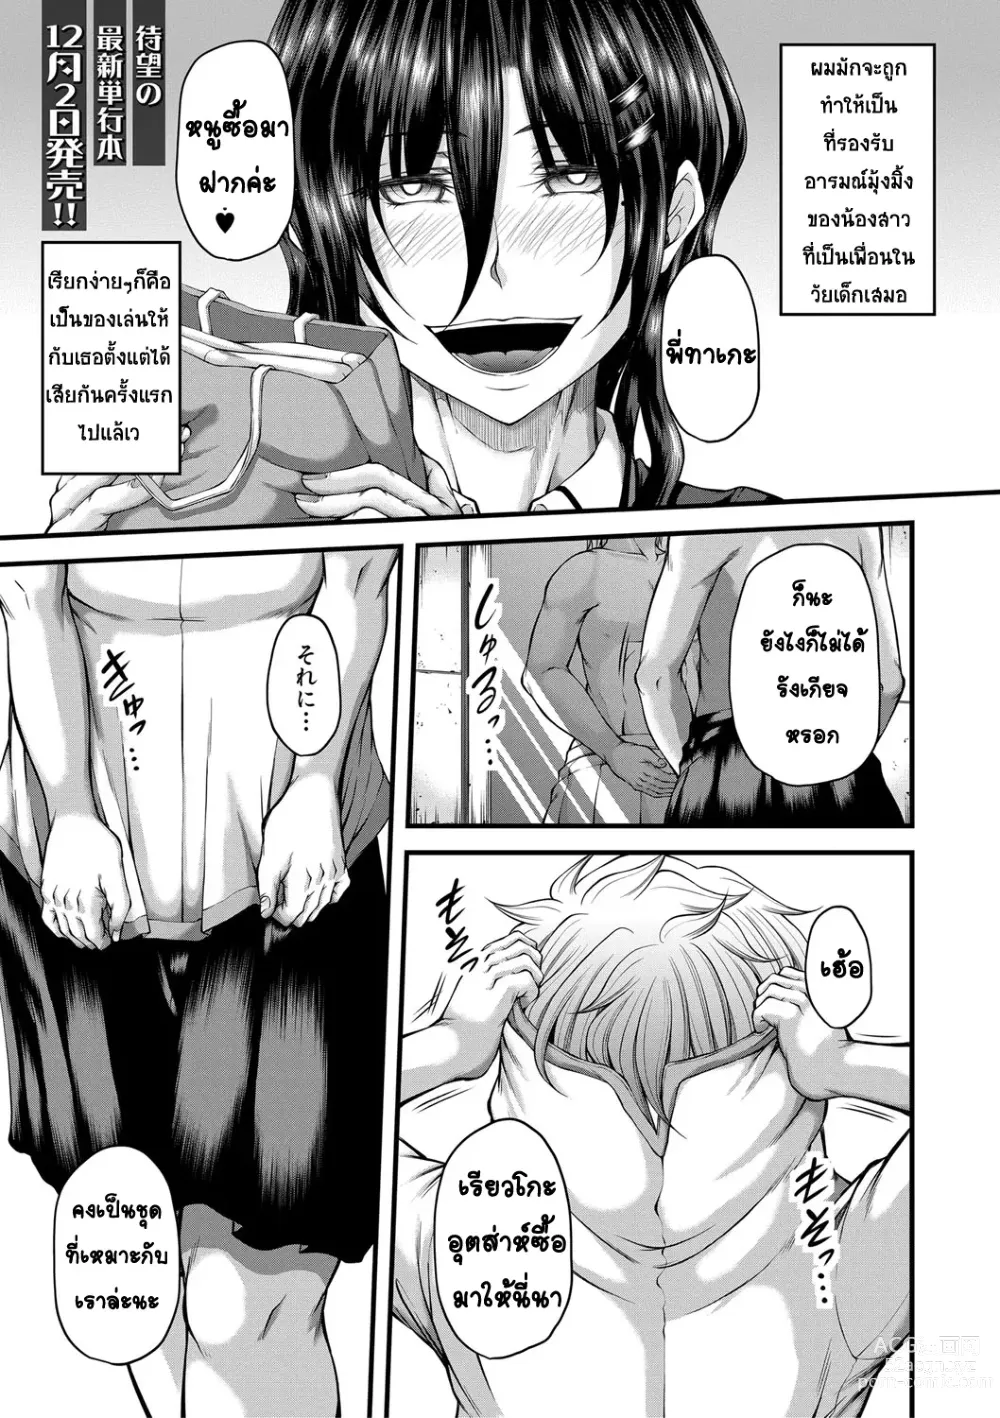 Page 1 of manga kakitsubata Kanae yoru onna ryushi wa han me rarenai 2